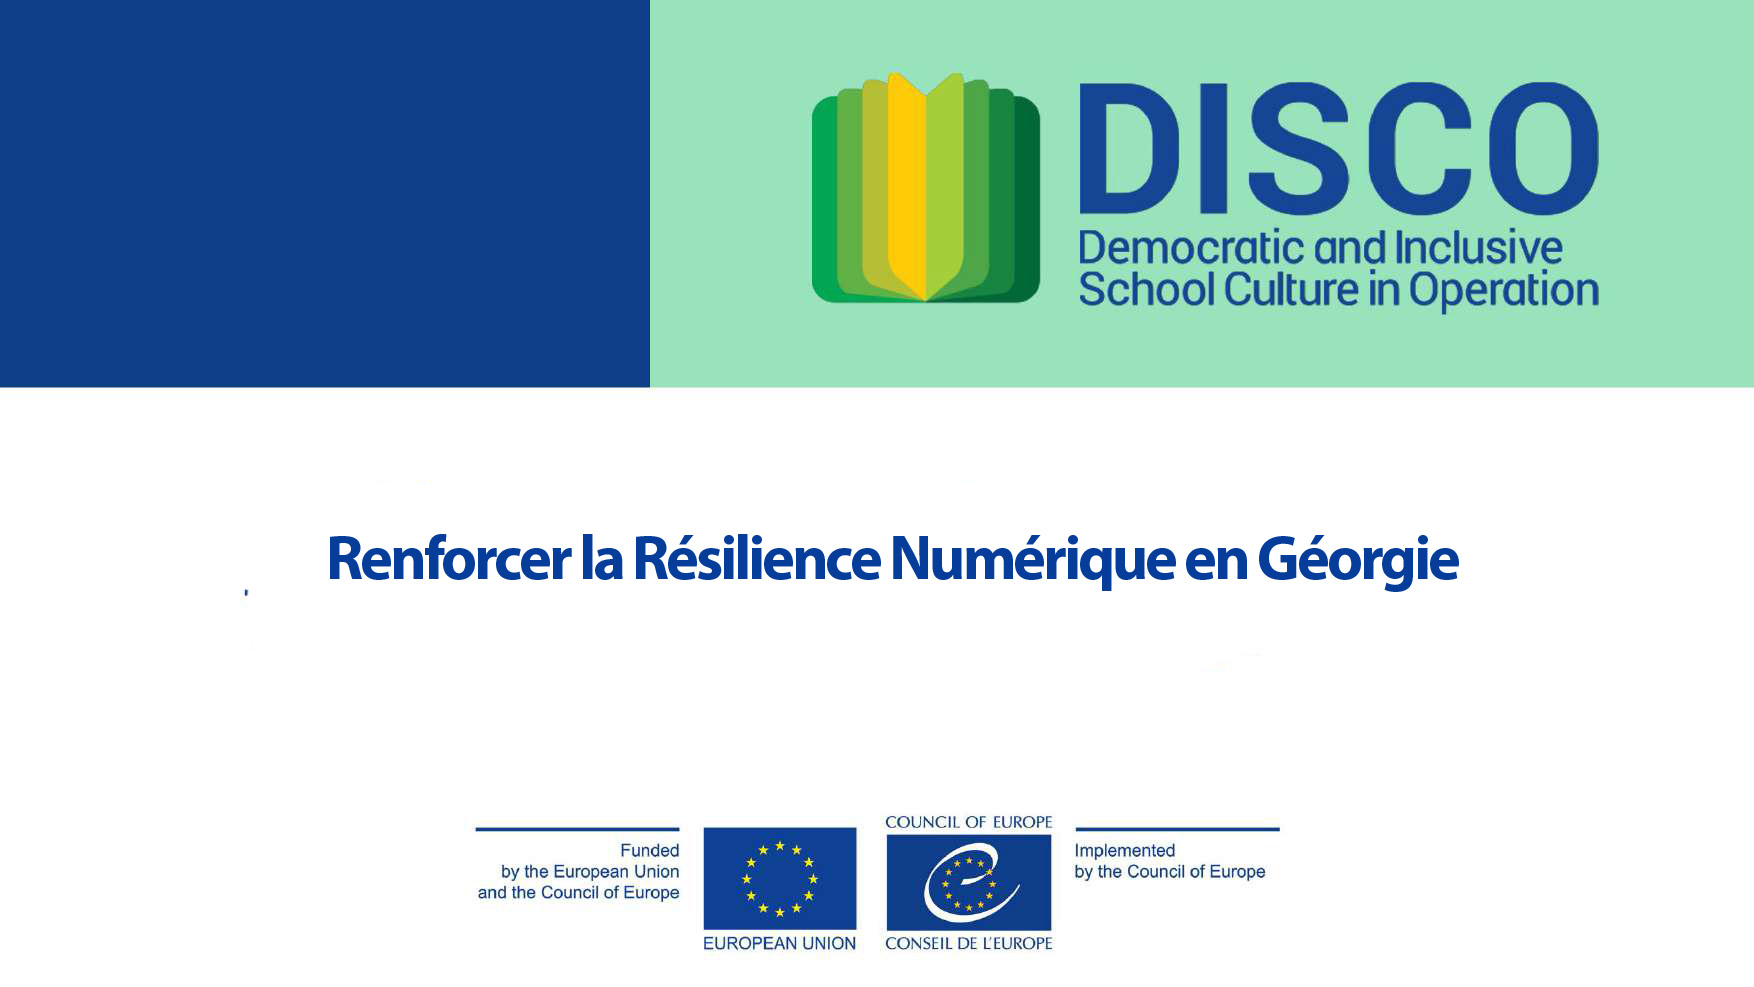 Strengthening Digital Resilience in Georgia